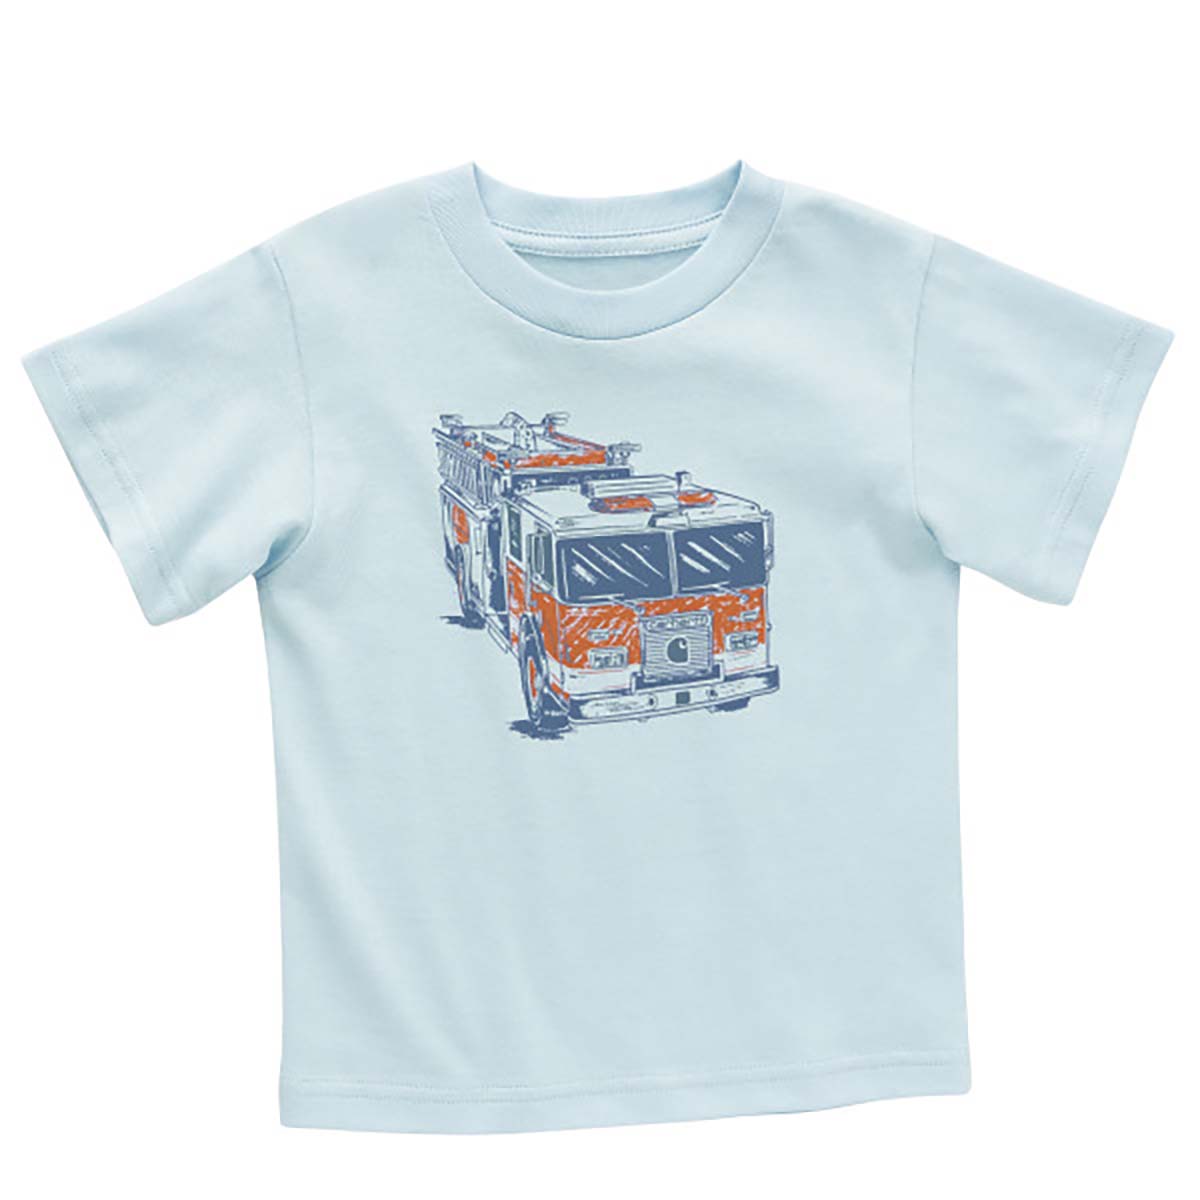 Carhartt Boys' Short Sleeve Fire Truck T-Shirt